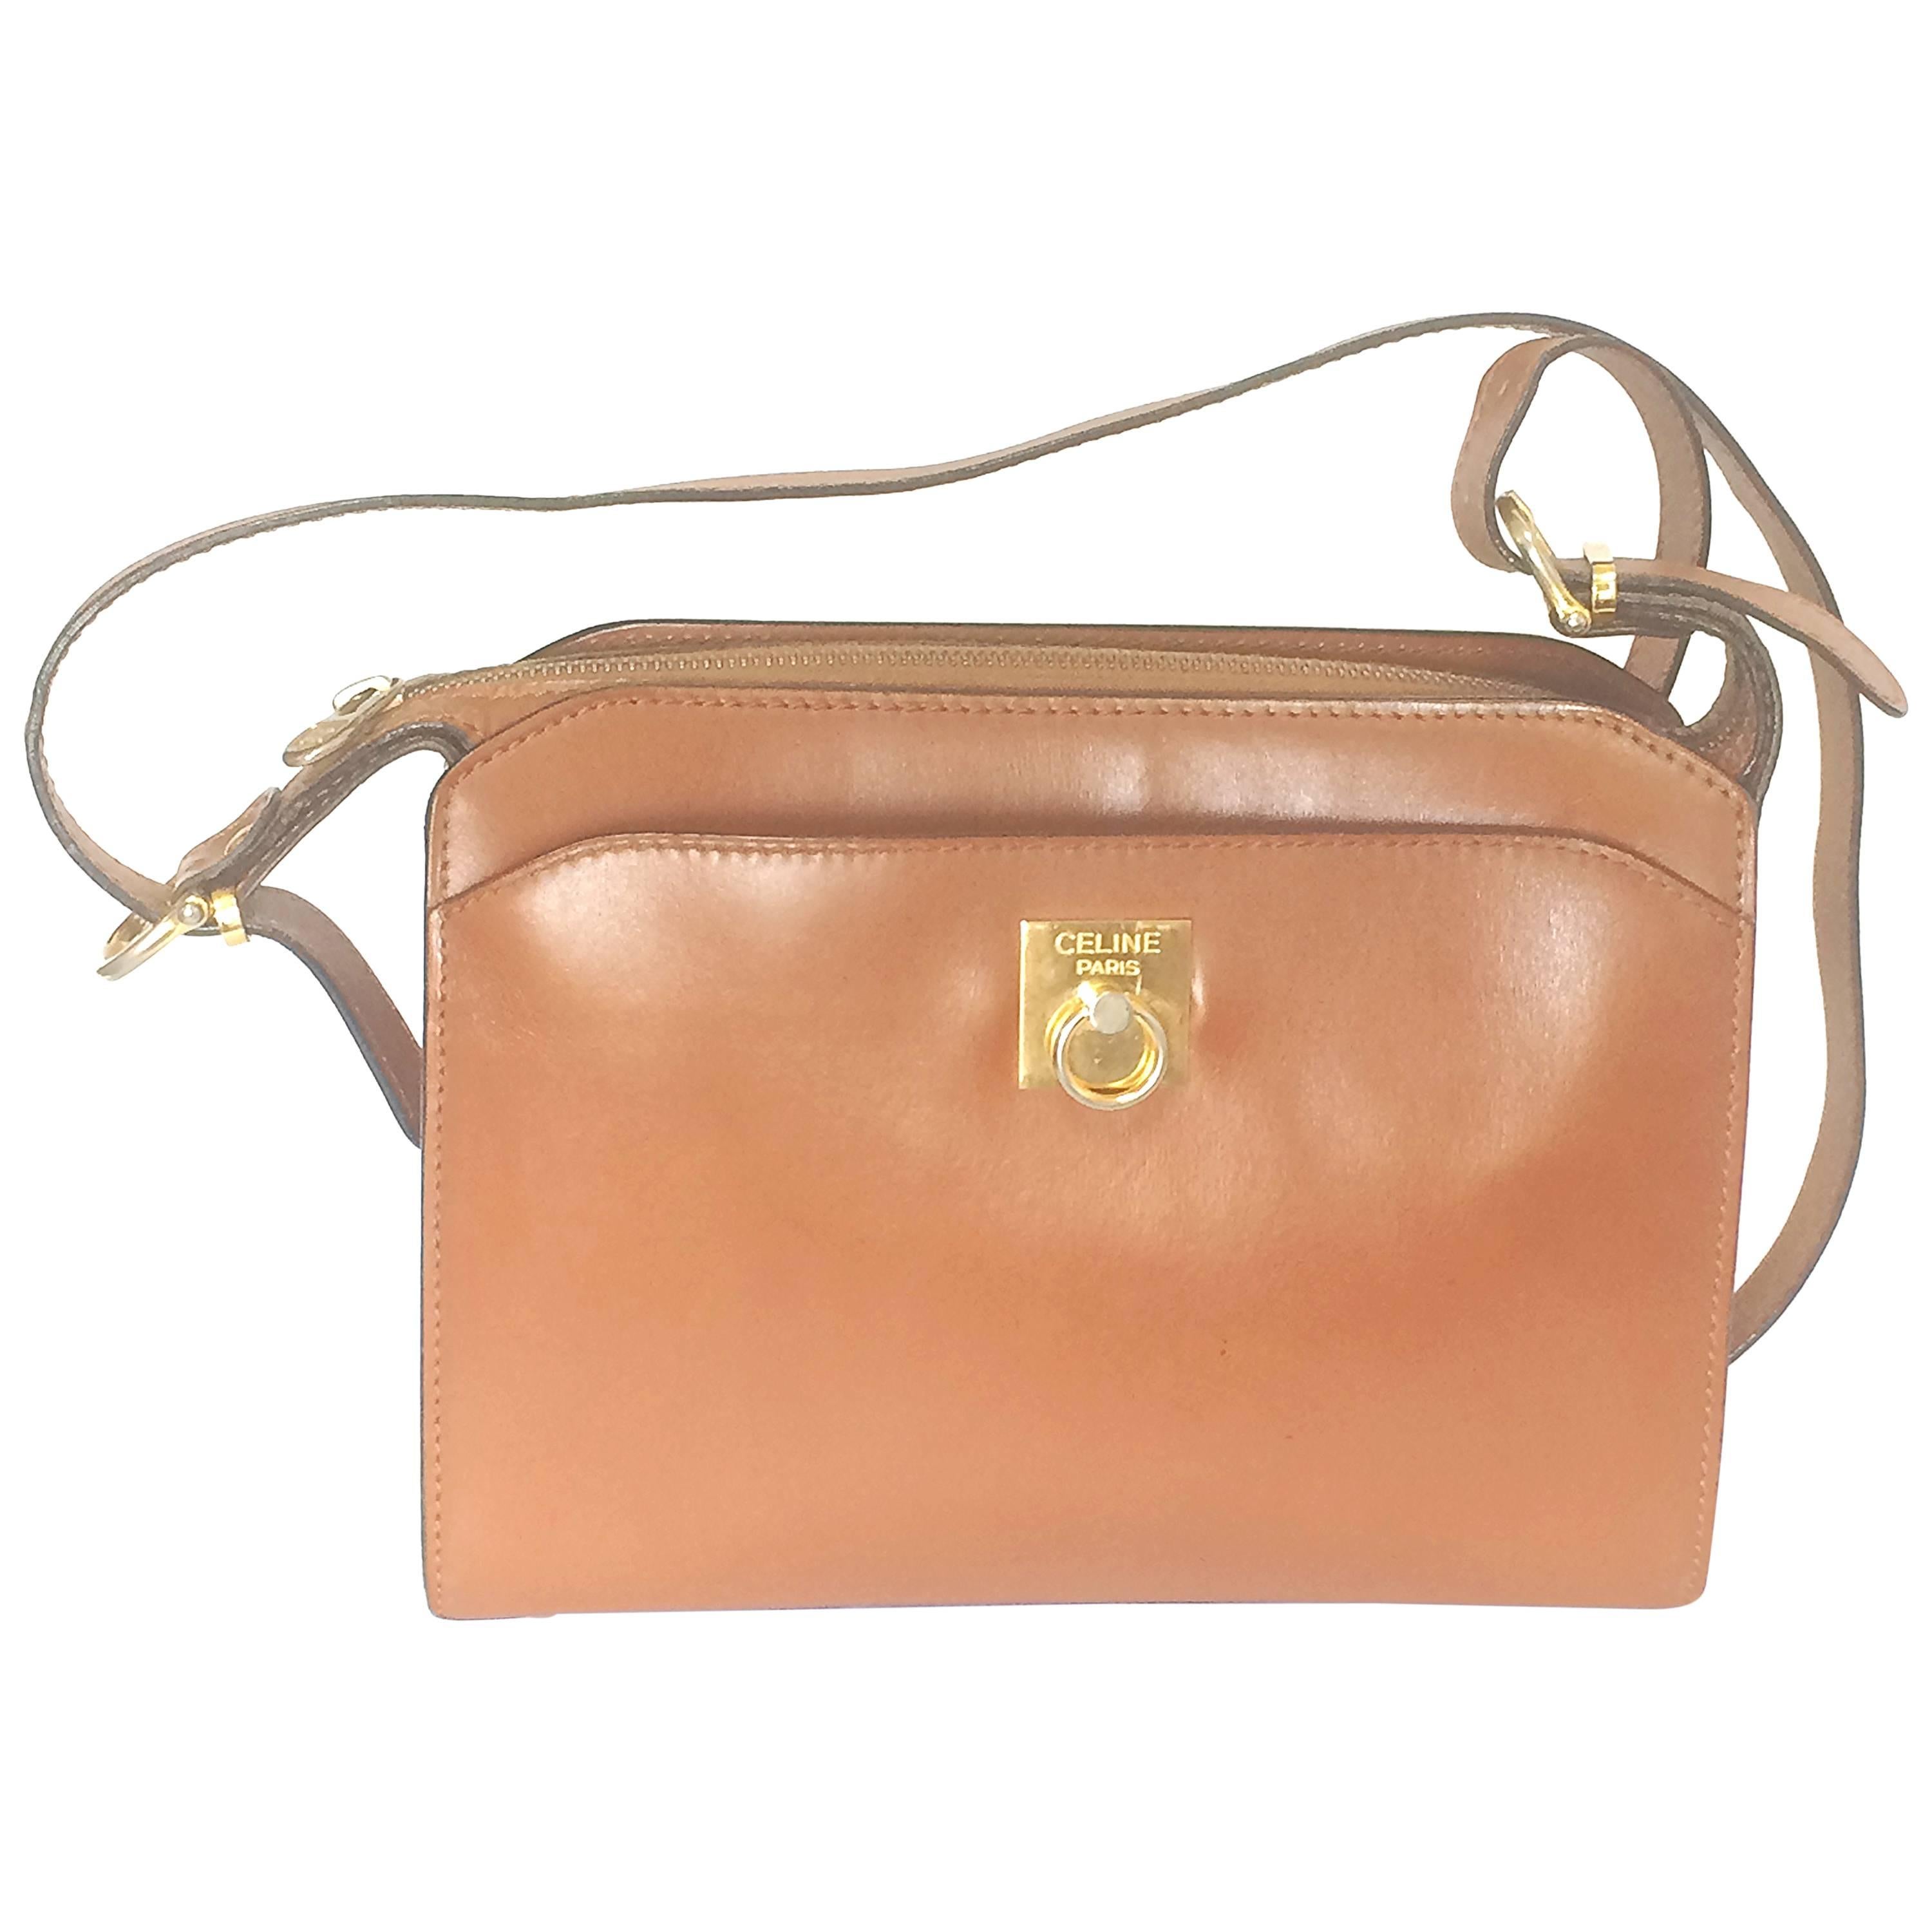 Vintage CELINE genuine brown leather shoulder bag with golden logo motif.